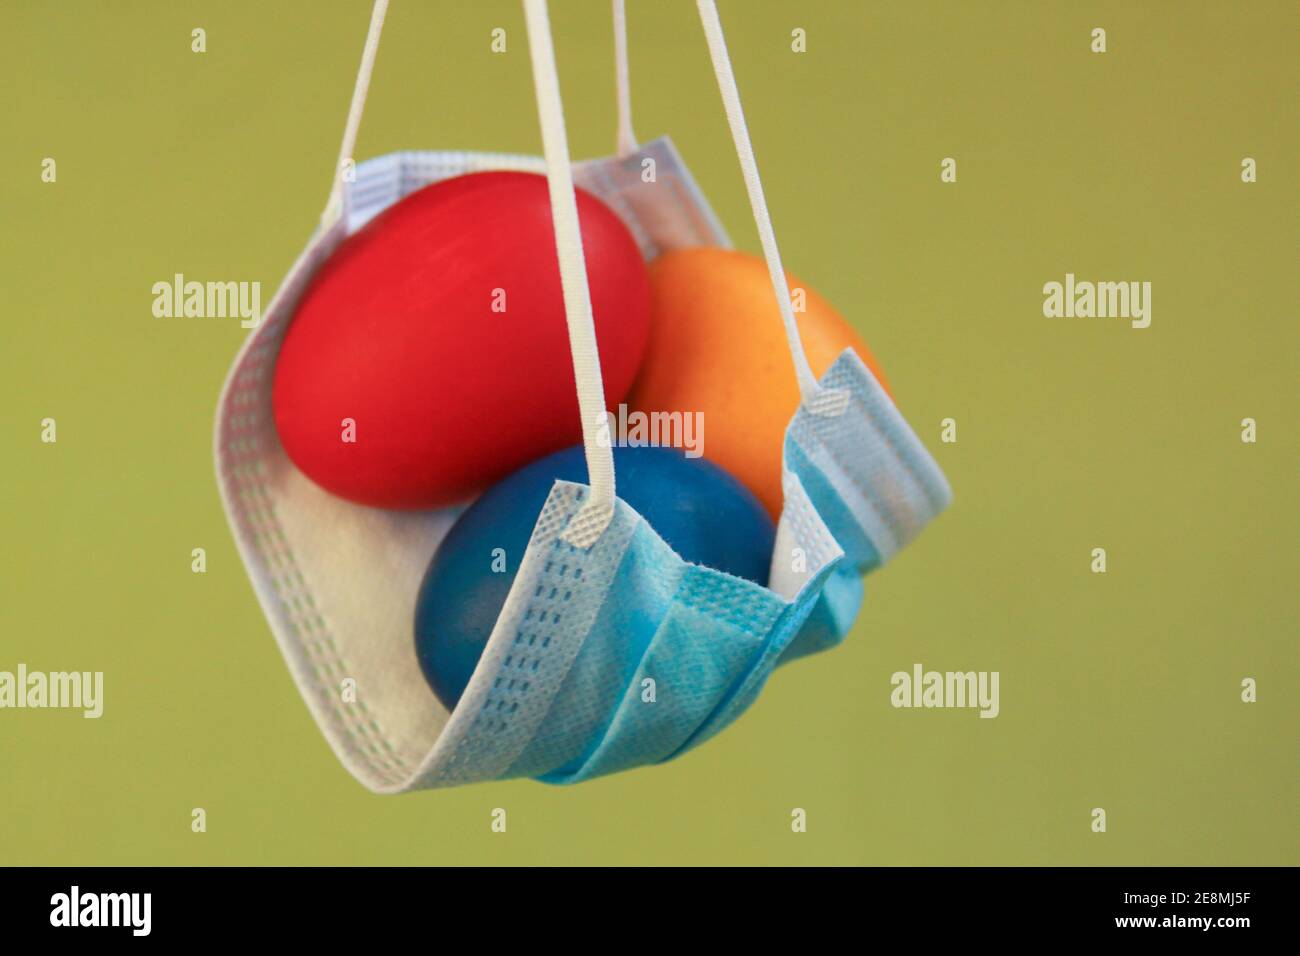 Huevos de Pascua coloreados aislados en máscara quirúrgica, un símbolo de la pandemia del coronavirus. La seguridad es lo primero en celebrar la Pascua 2020 covid 19 brote Foto de stock